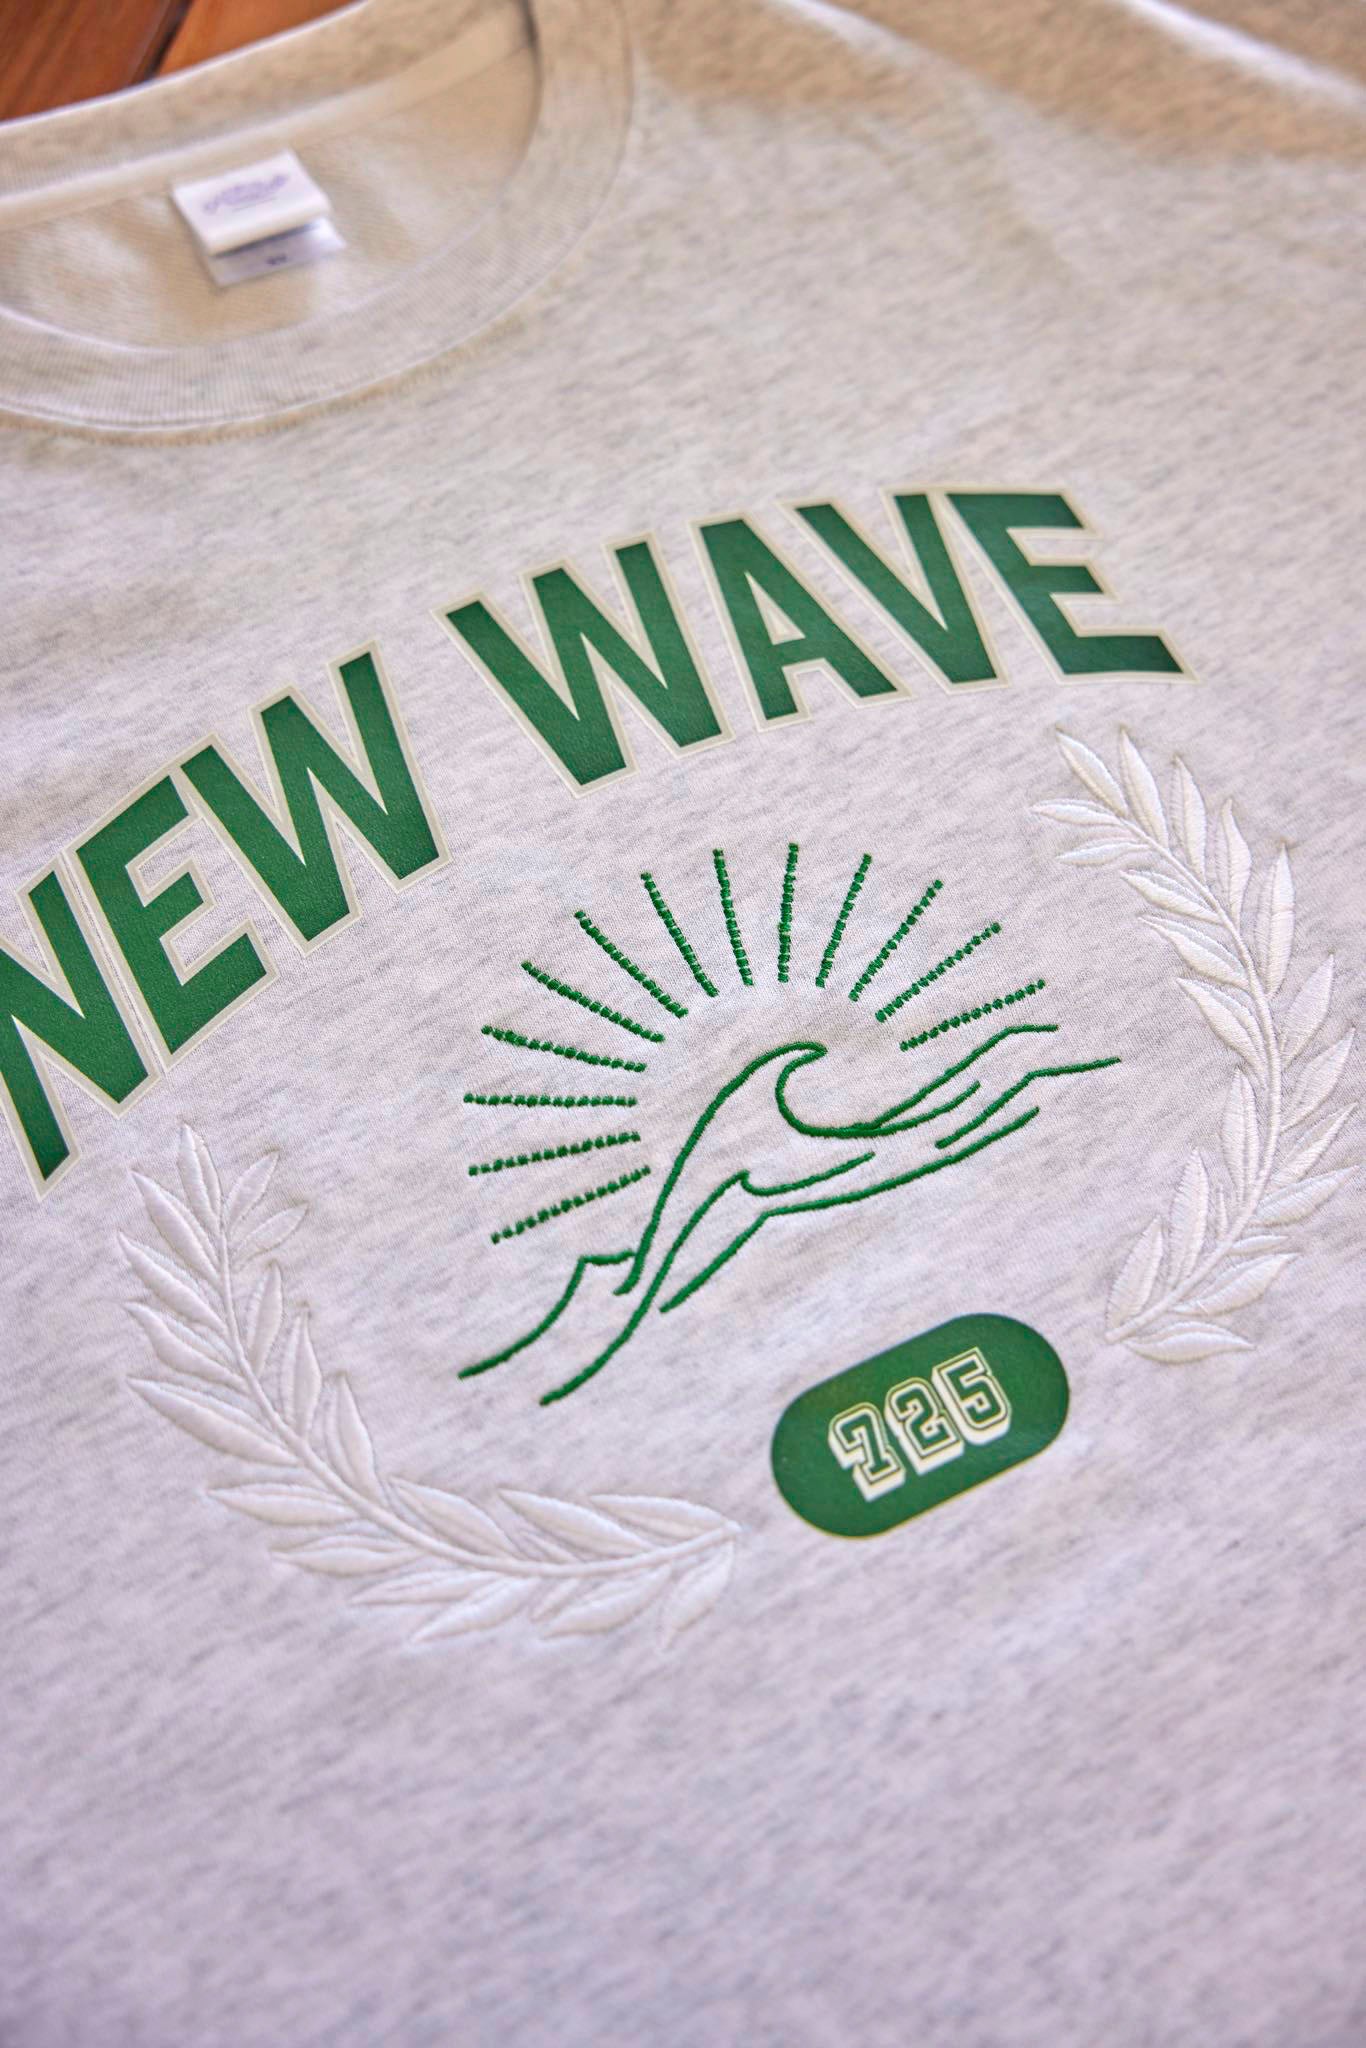 『NEW WAVE』トレーナー